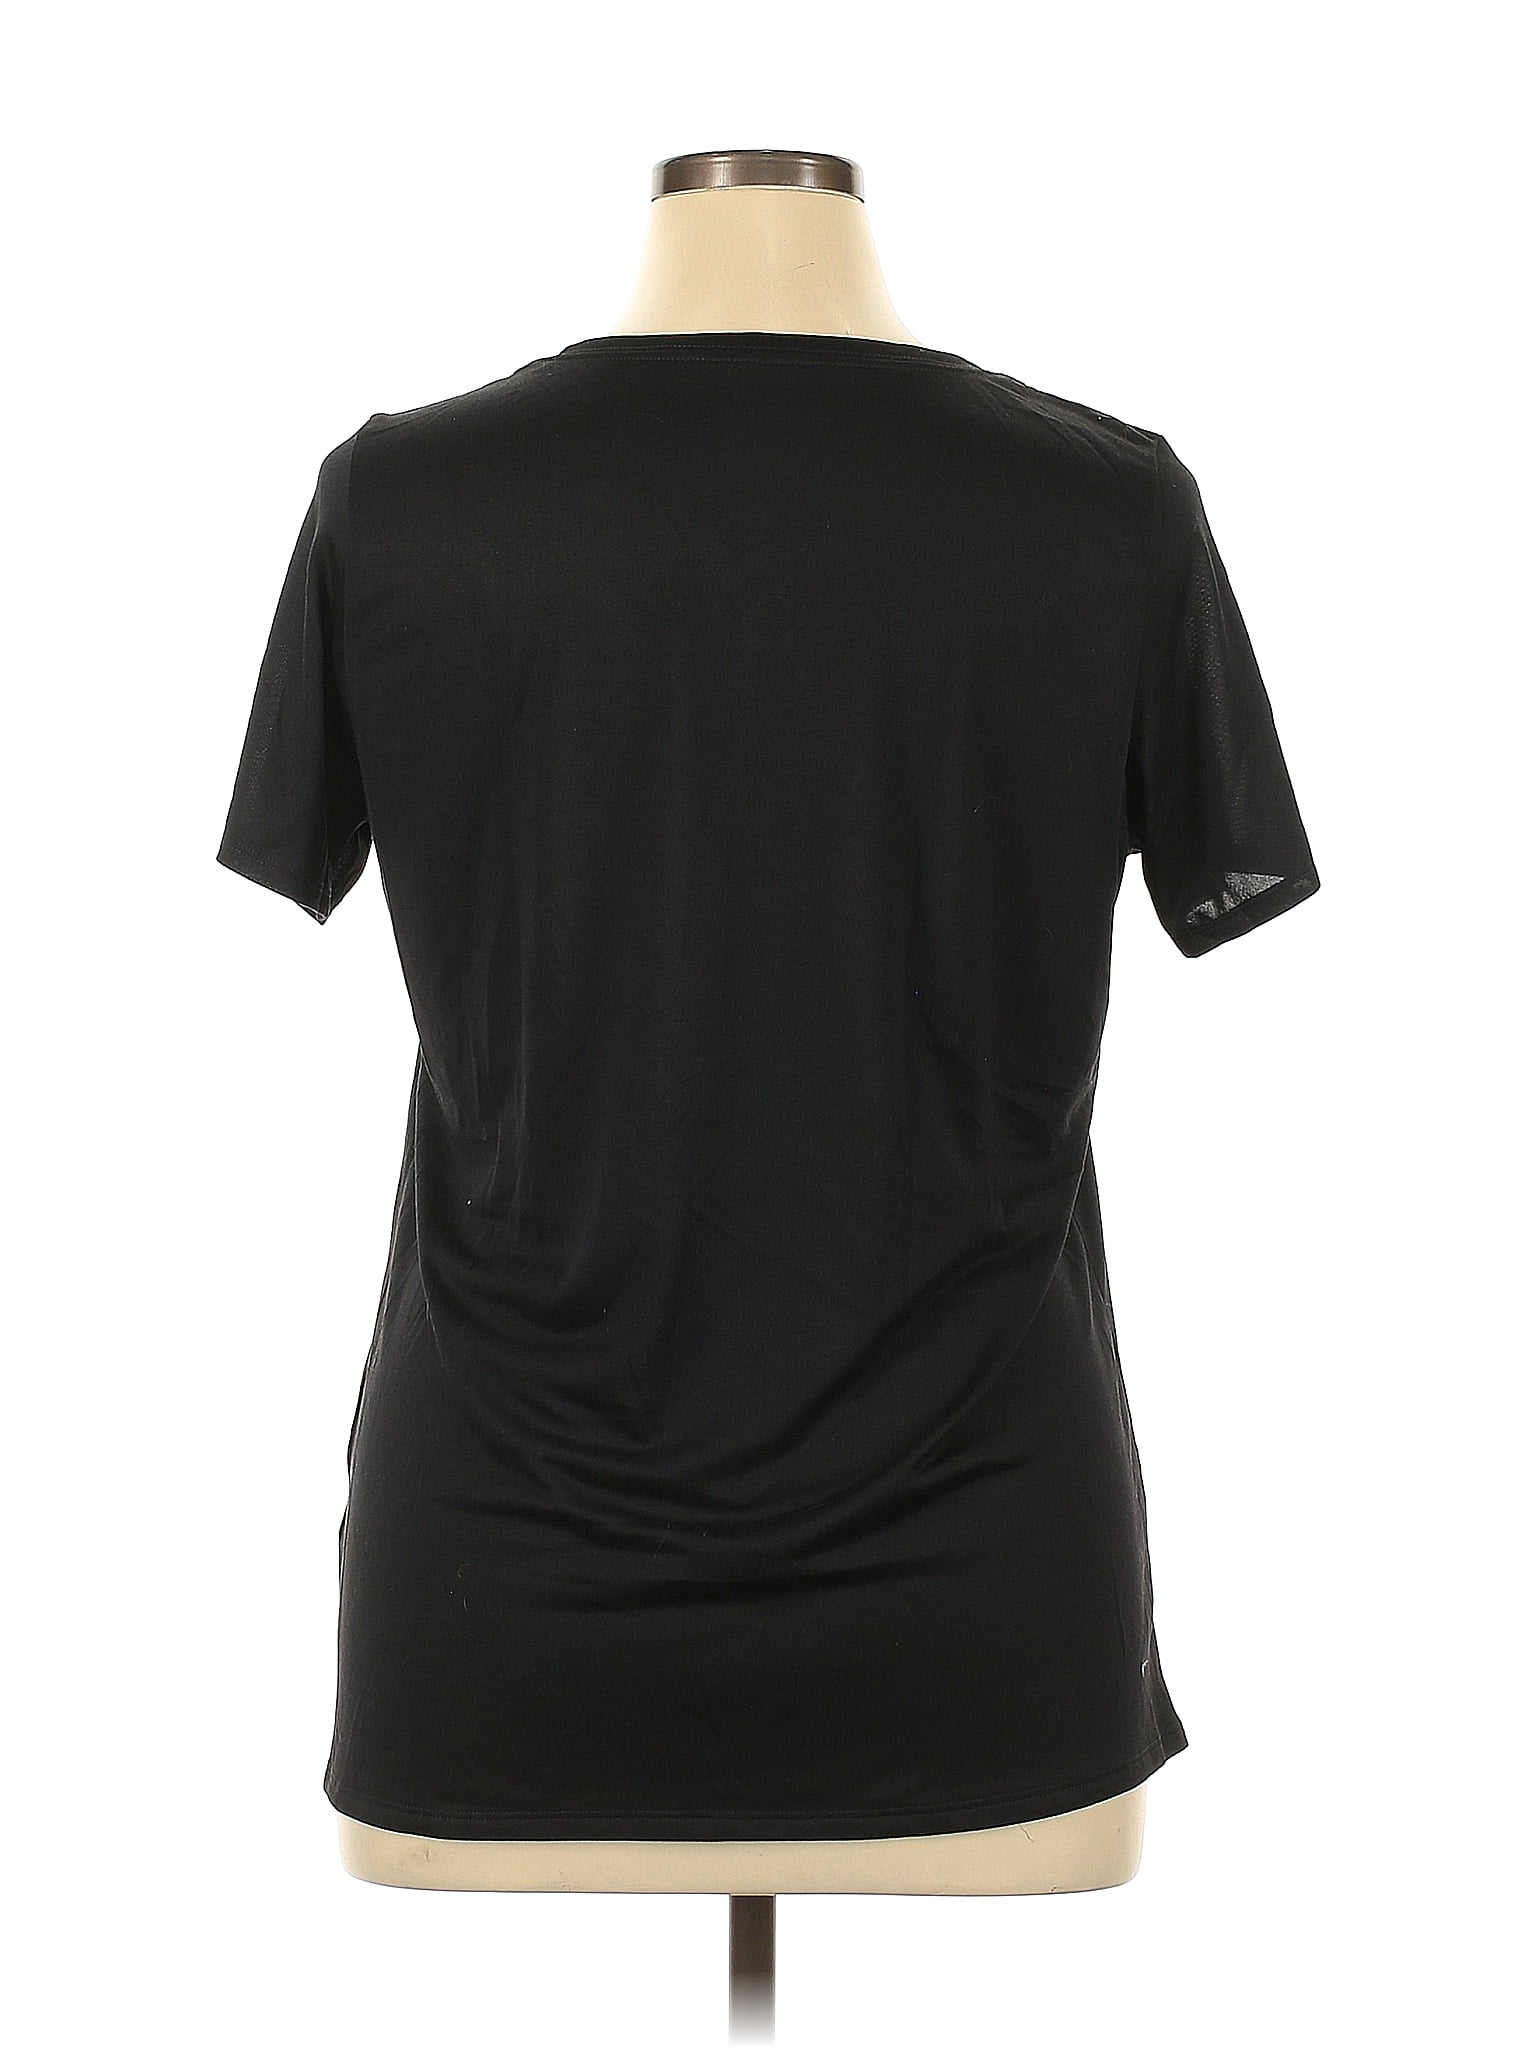 GAIAM Black Active T-Shirt Size XL - 52% off